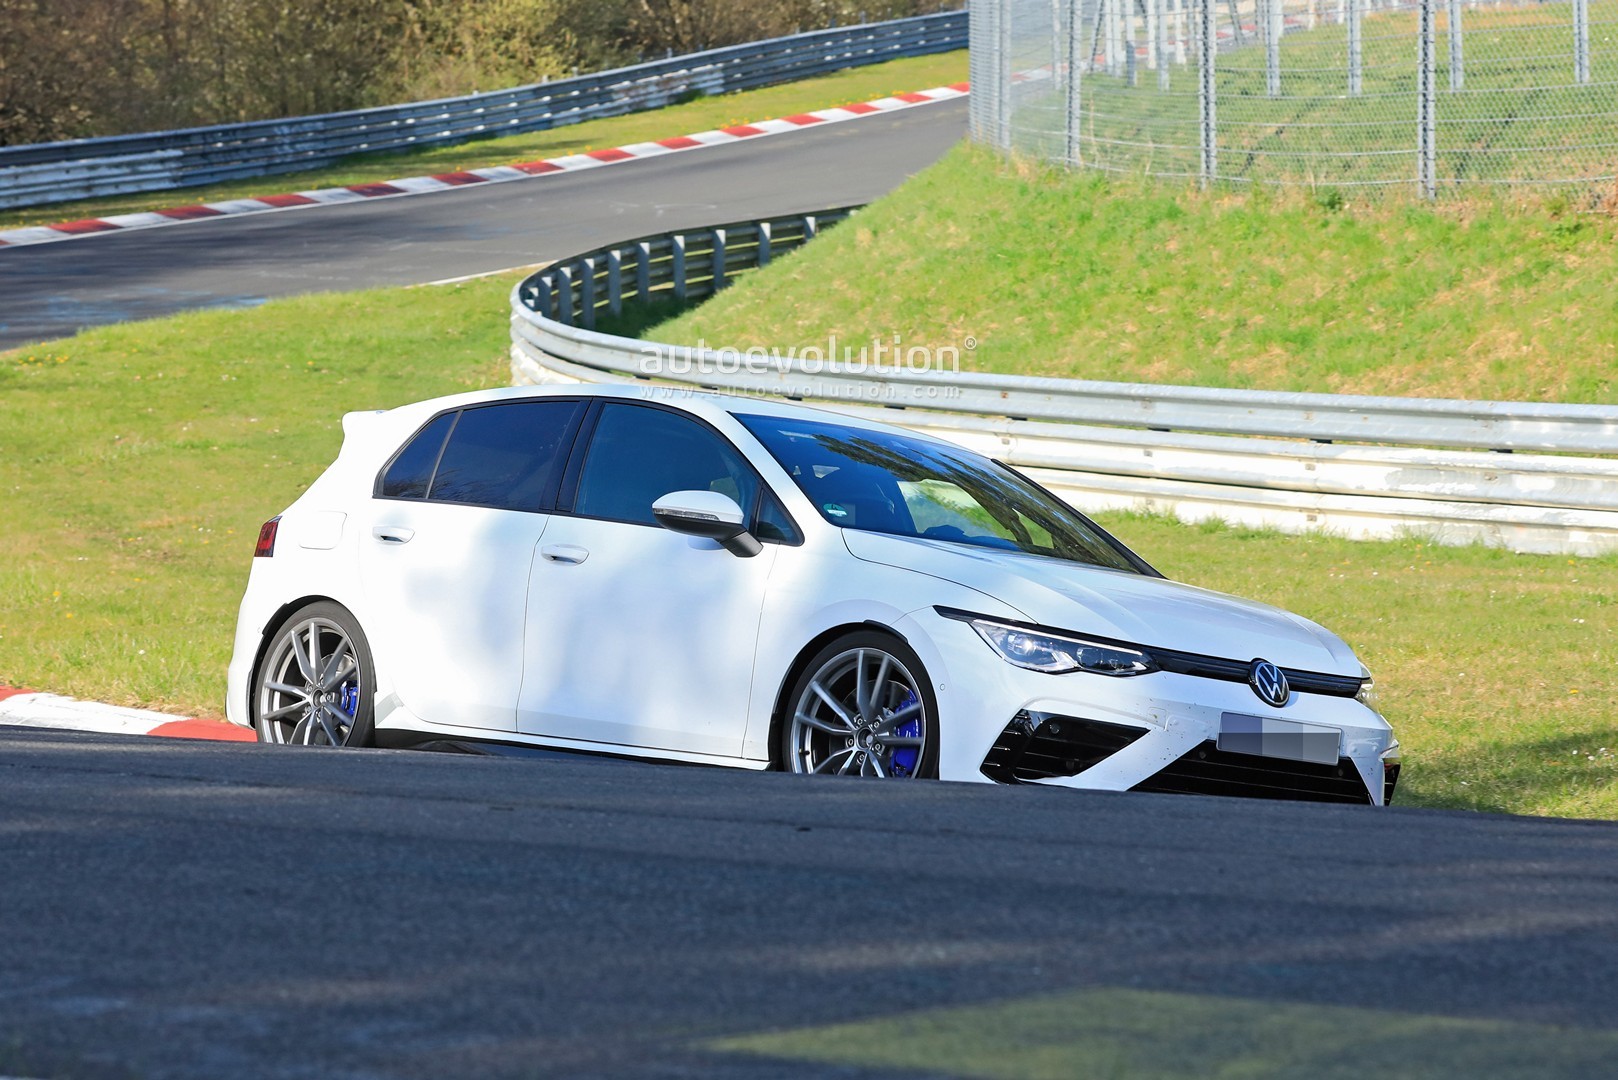 2021 Volkswagen Golf 8 R Begins Nurburgring Testing, Has More Power